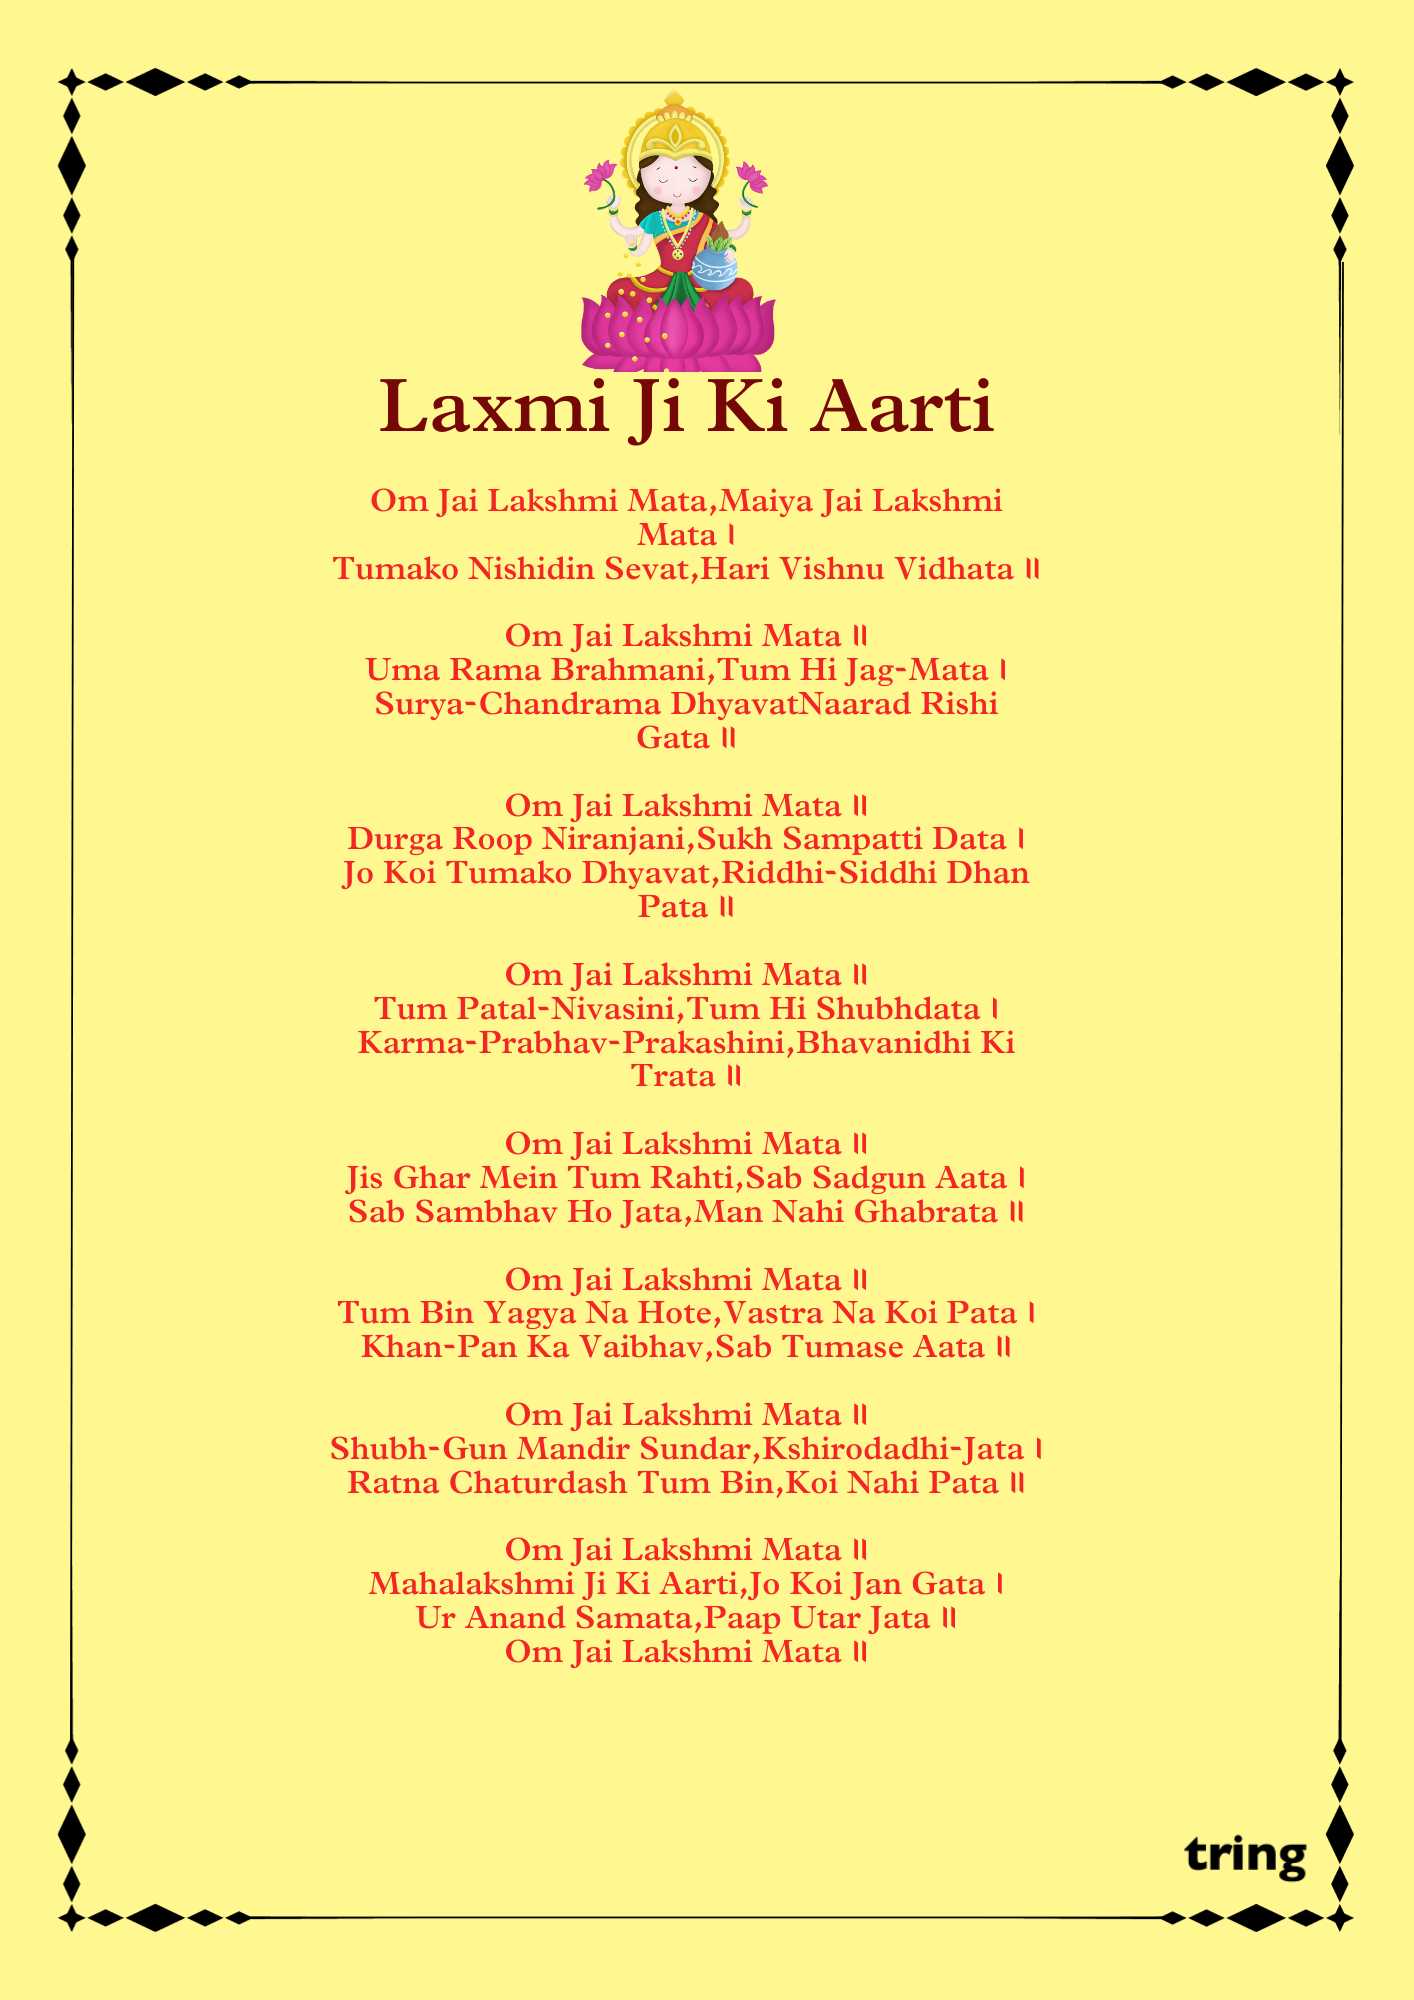 Lakshmi Ji Ki Aarti Images (1)